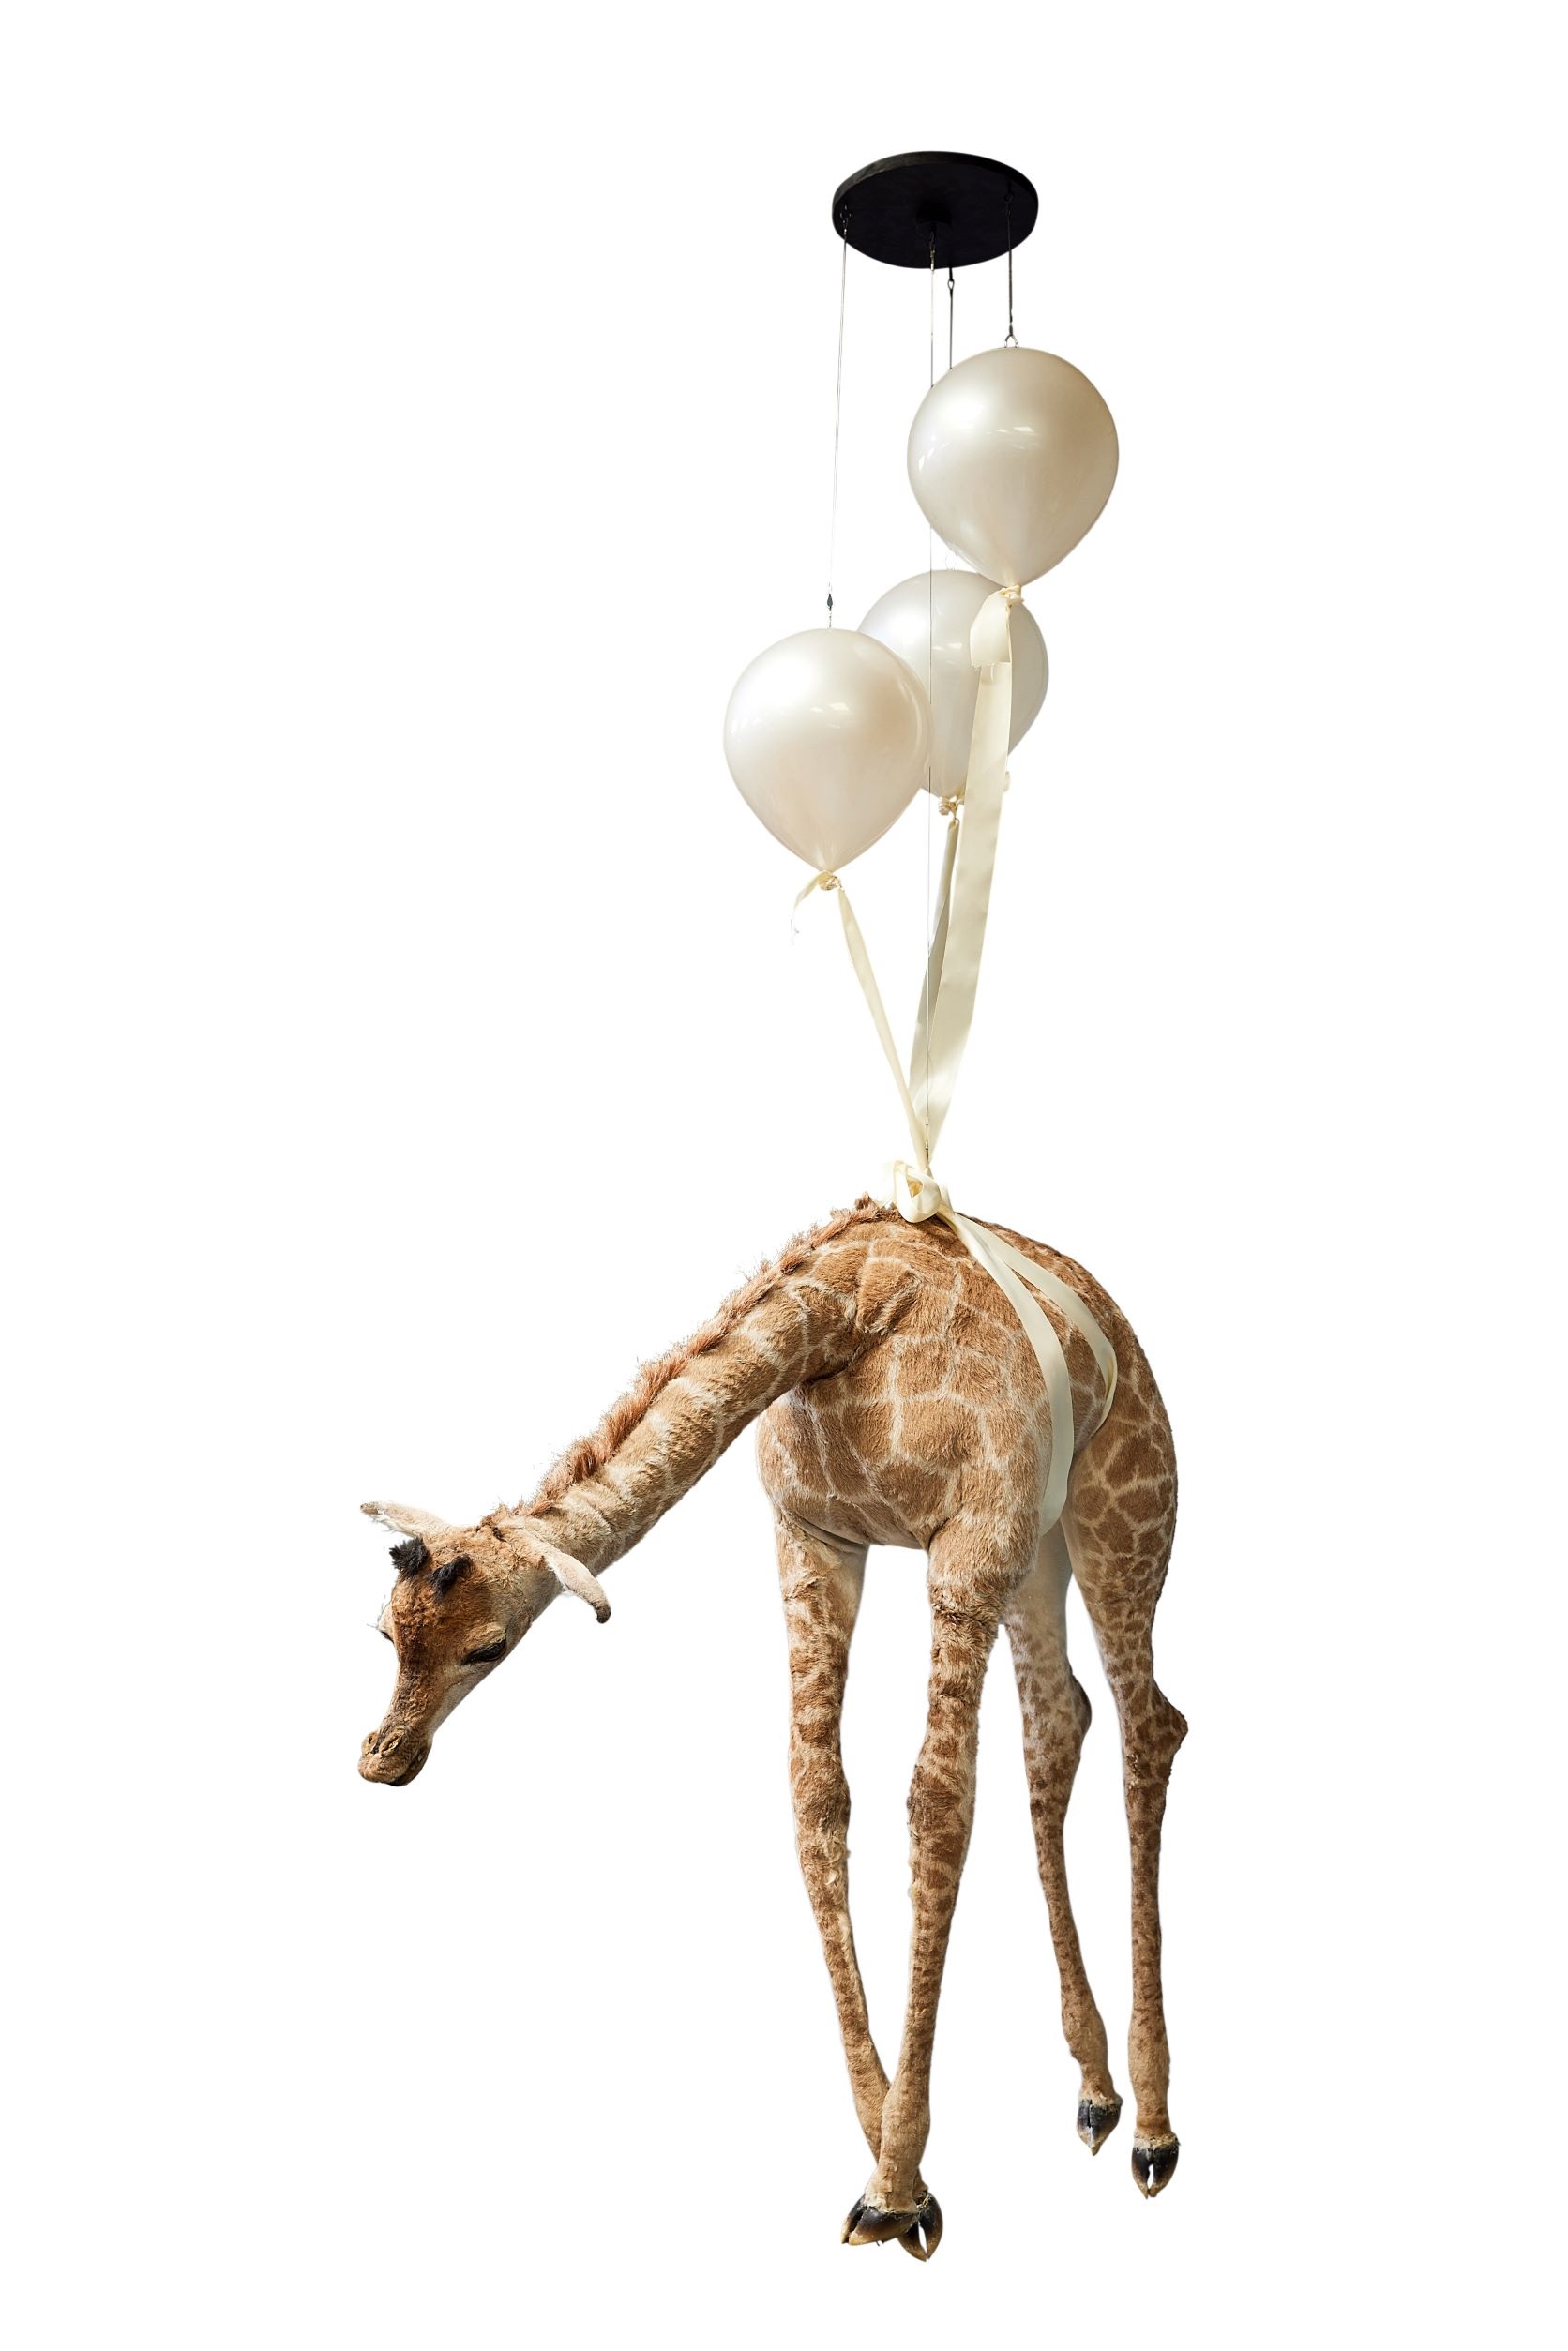 Simon Wilson, ‘Floating Giraffe,’ est. £3,000-£5,000